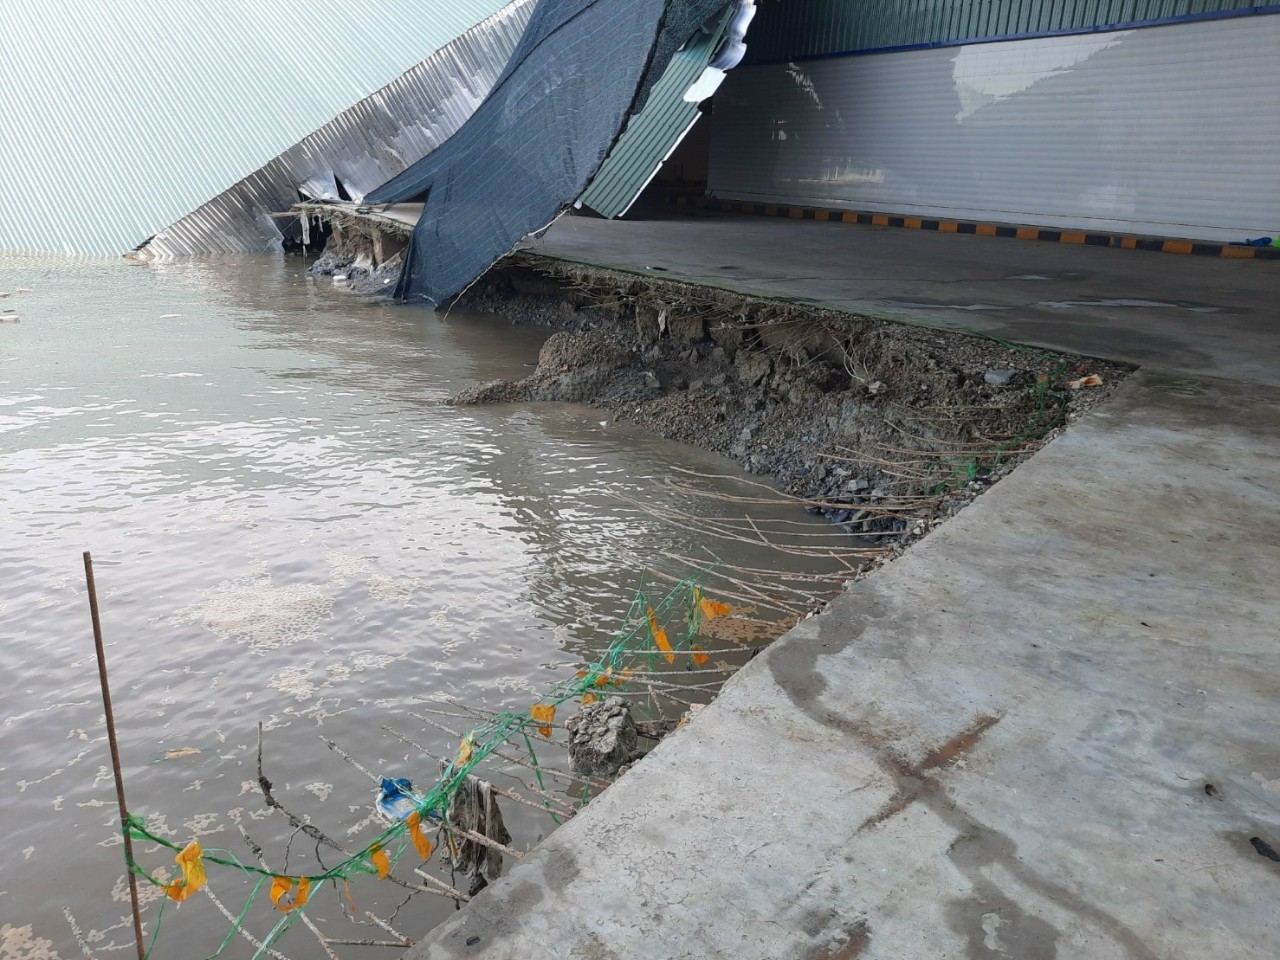 Sạt lở kéo công ty chế biến bột cá xuống sông, thiệt hại hơn 5 tỉ đồng - Ảnh 2.